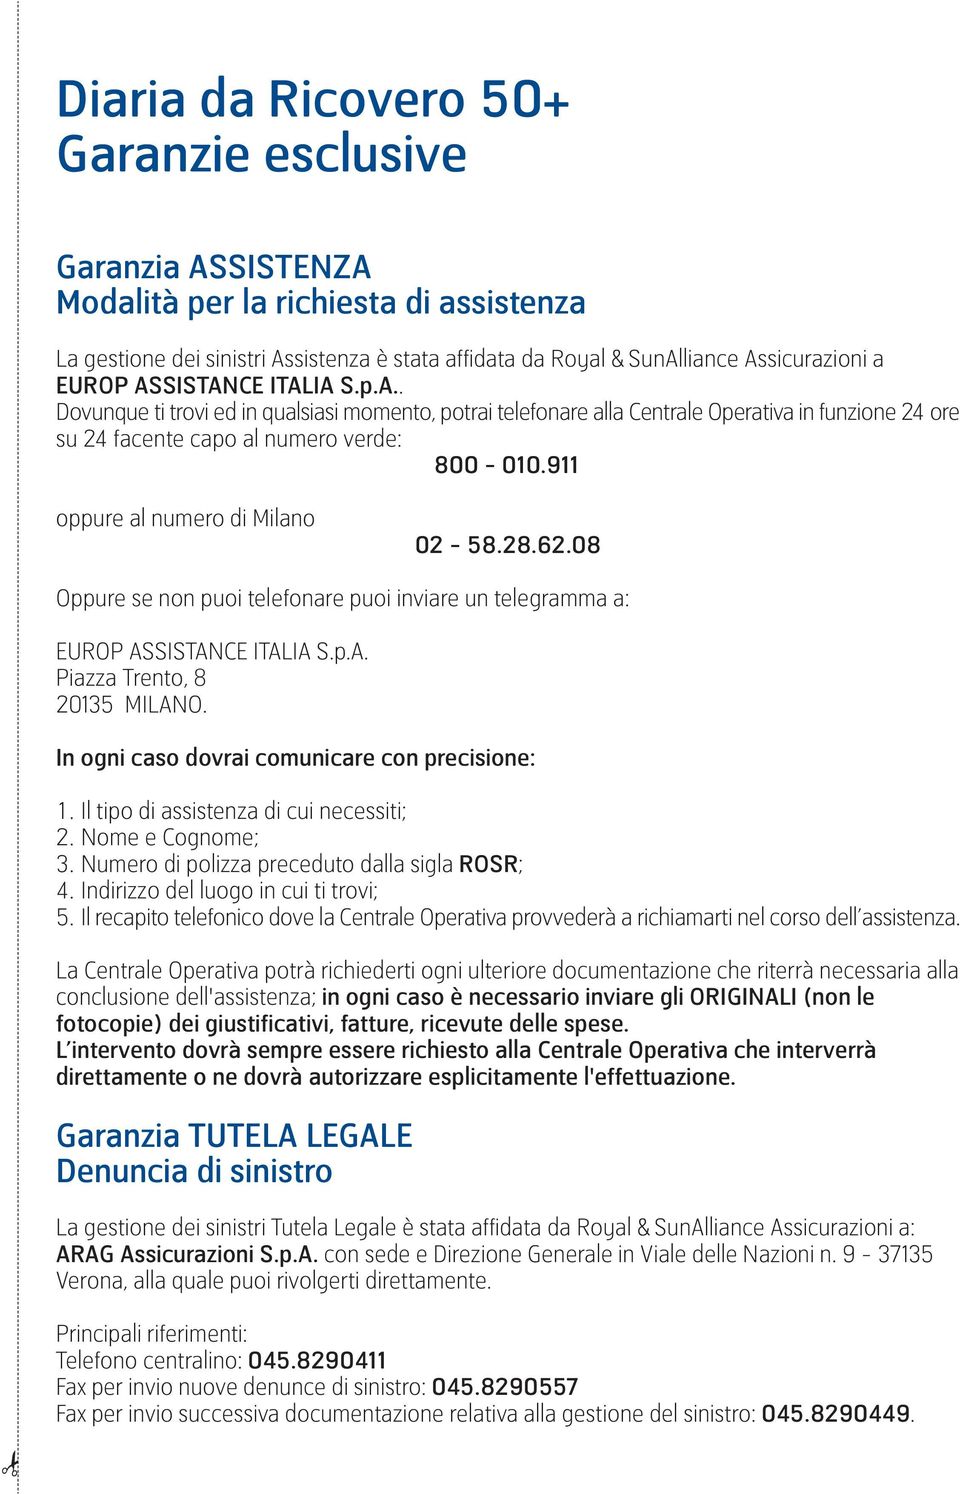 911 oppure al numero di Milano 02-58.28.62.08 Oppure se non puoi telefonare puoi inviare un telegramma a: EUROP ASSISTANCE ITALIA S.p.A. Piazza Trento, 8 20135 MILANO.